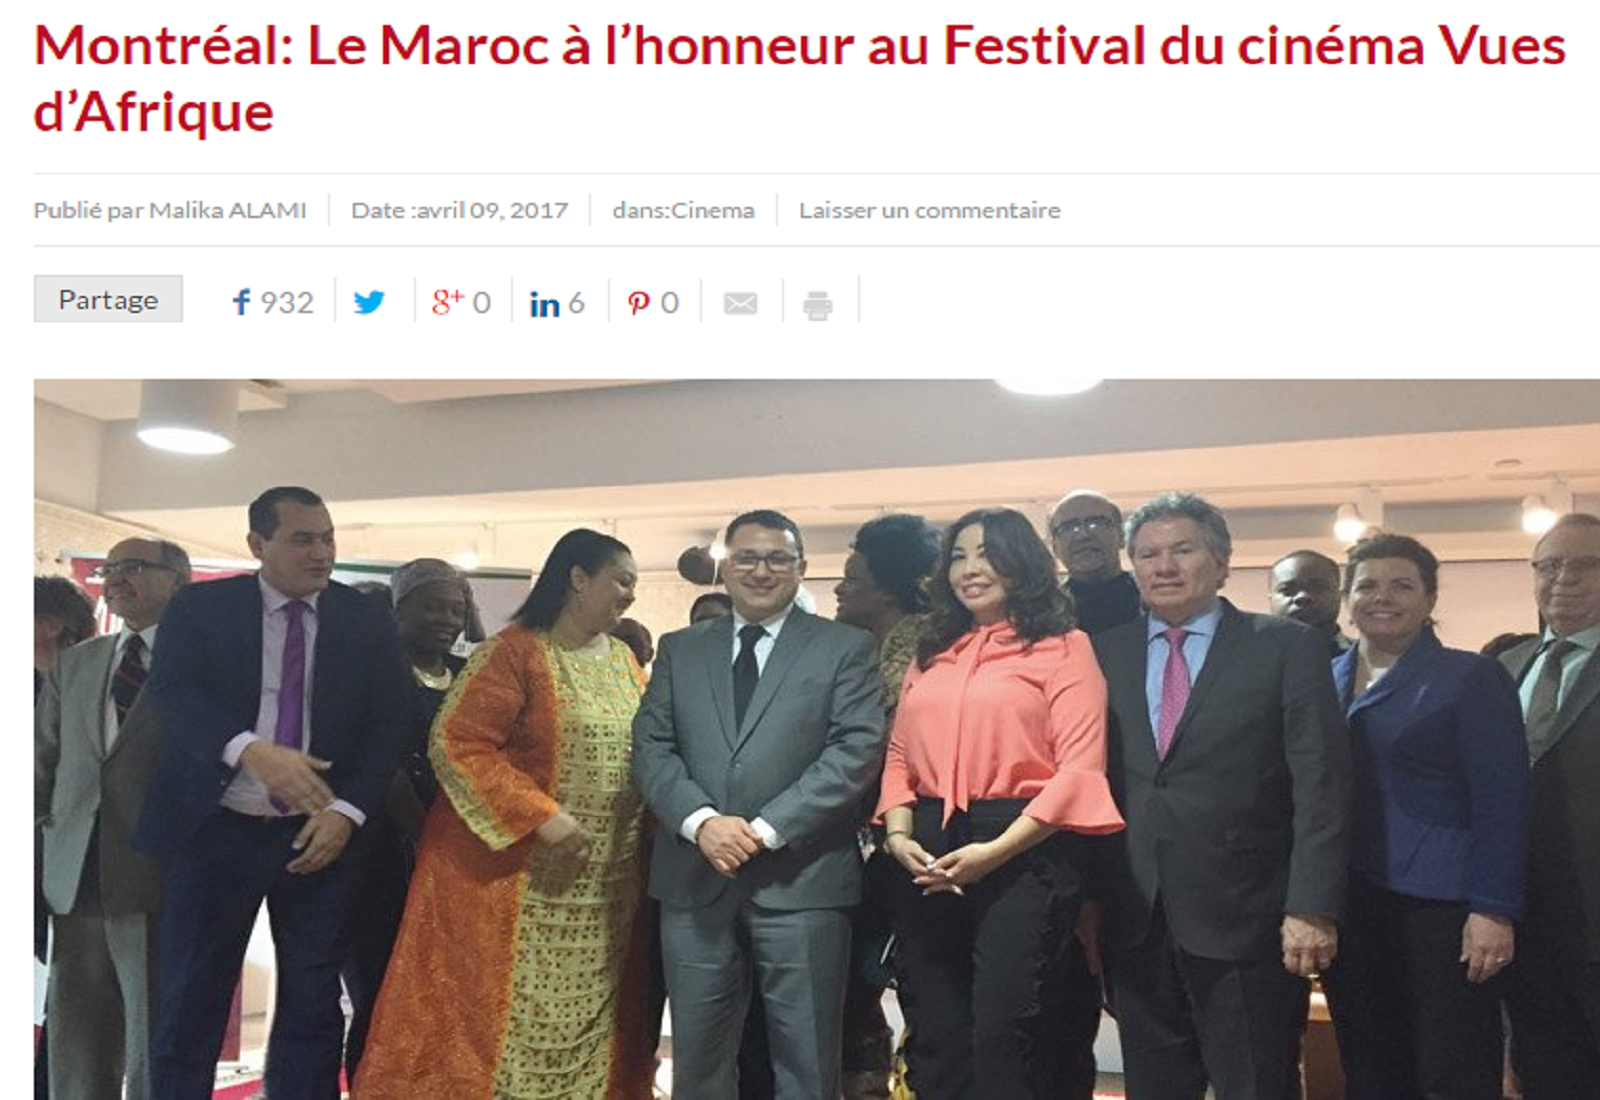 Le Maroc à l’honneur au Festival du cinéma Vues d’Afrique